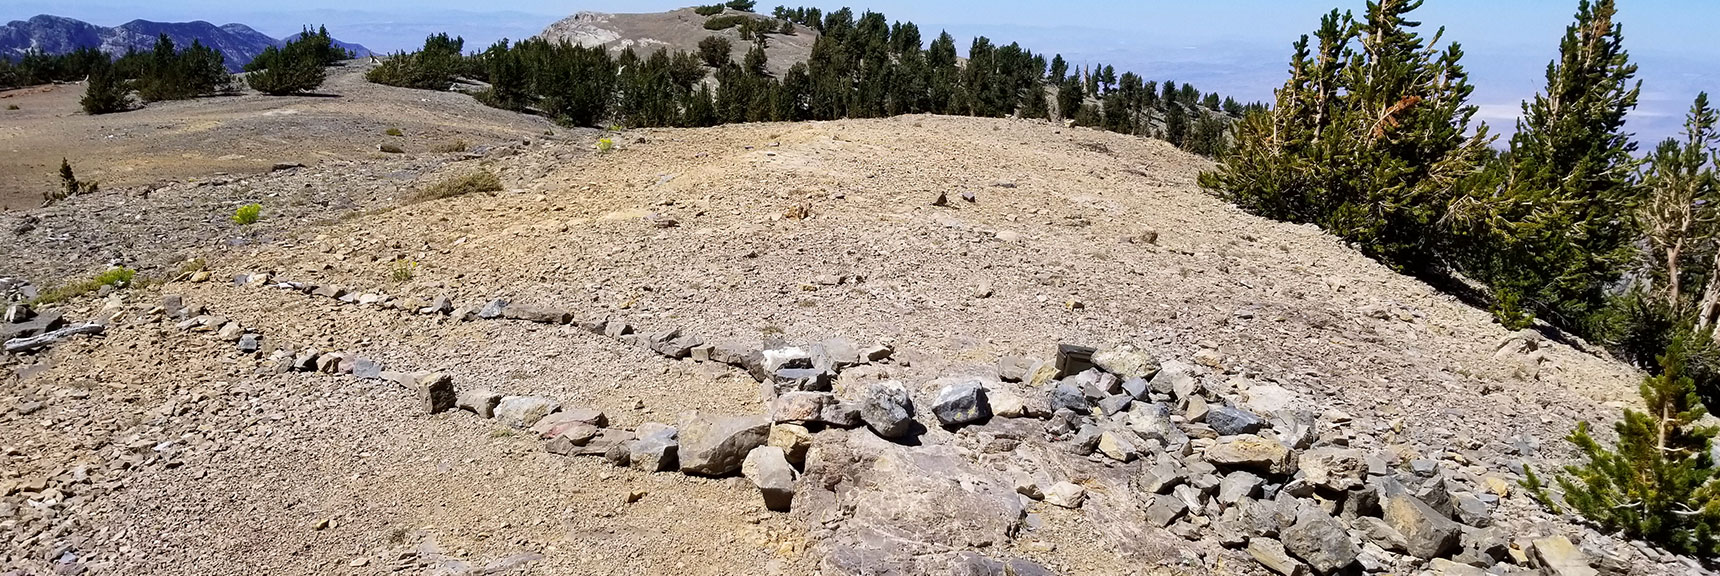 Summit of Mummy Mountain, Nevada